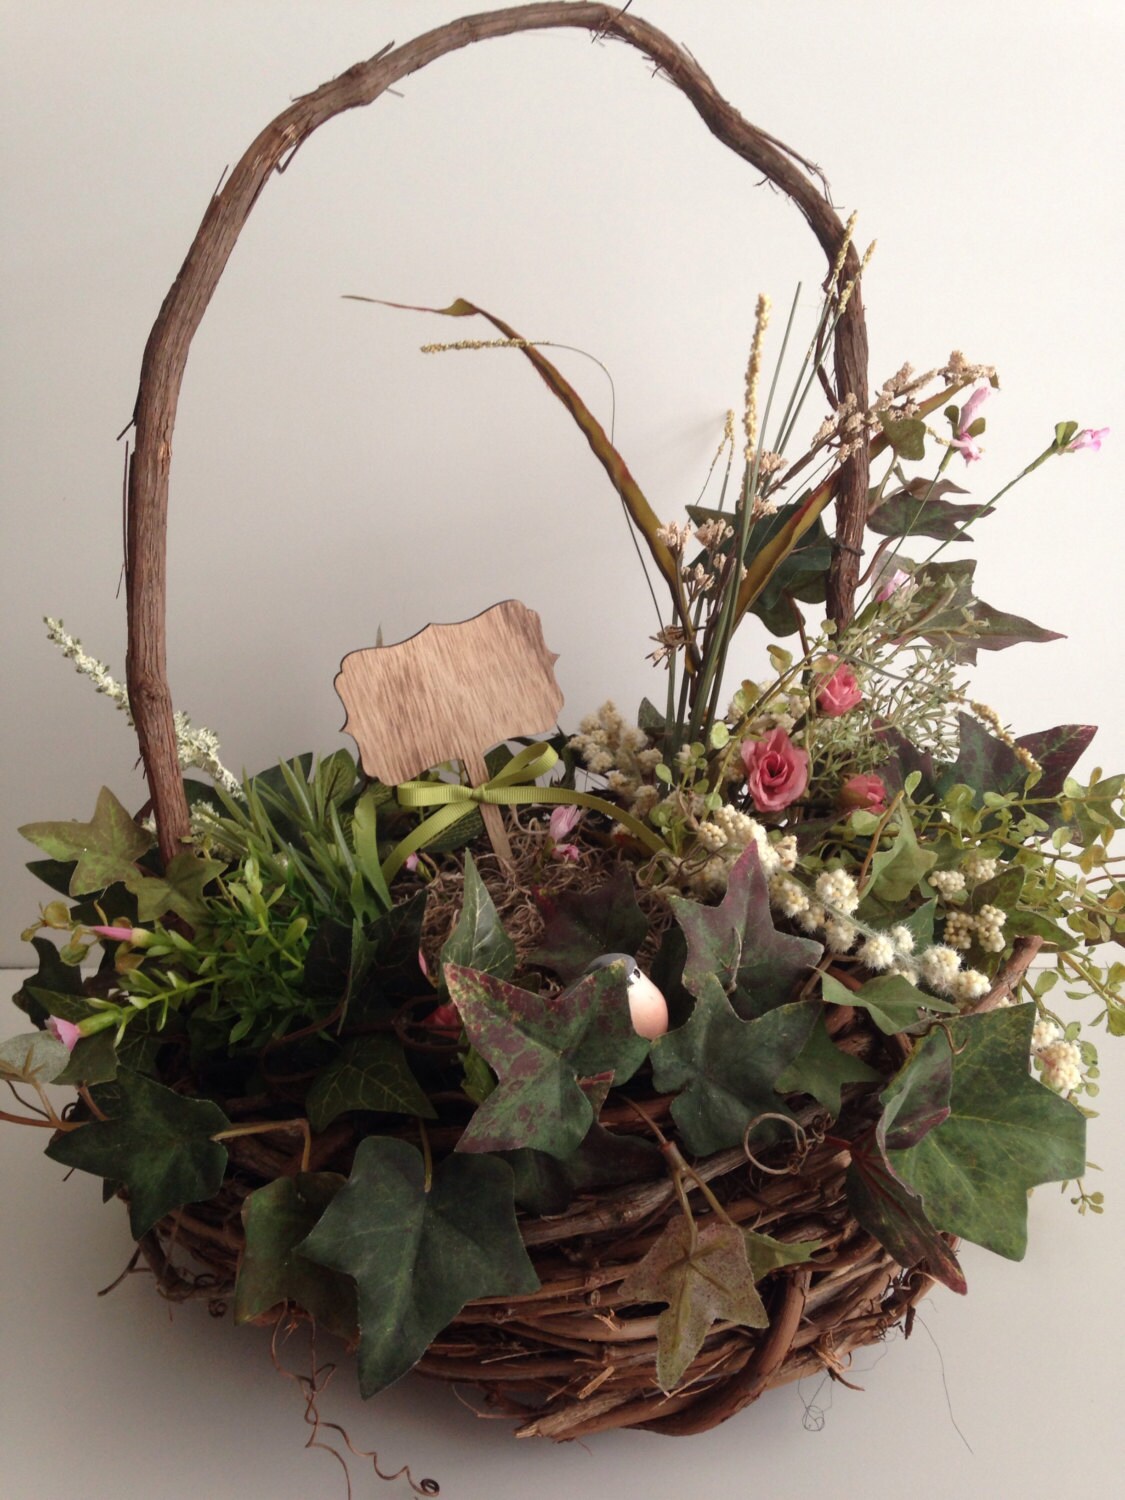 Grapevine basket wild flower arrangement